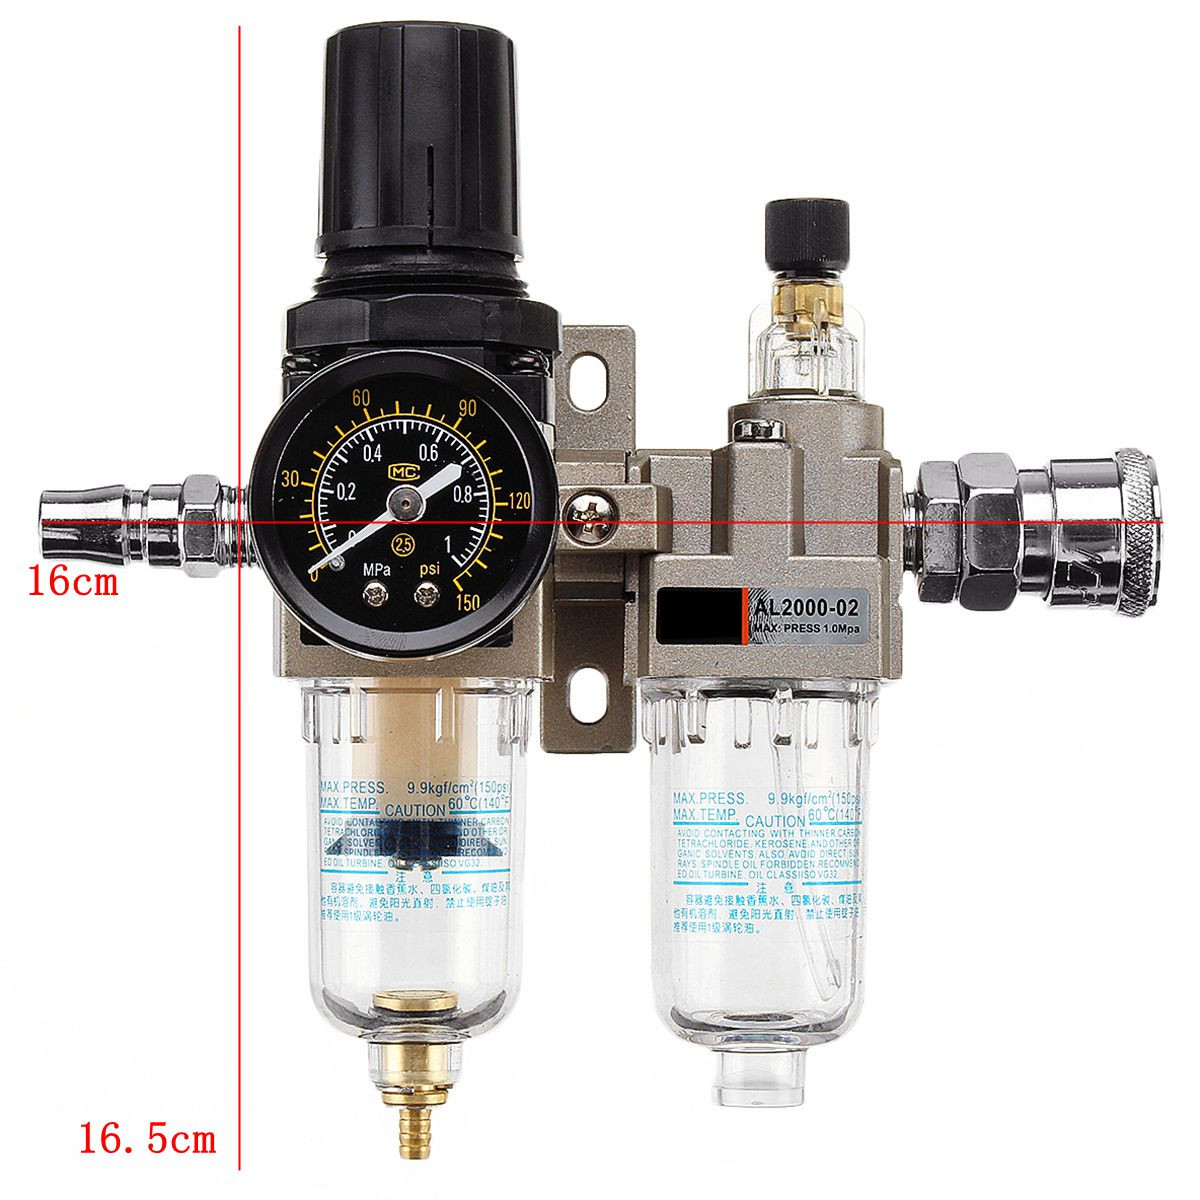 150Psi-Manual-Pneumatic-Air-Pressure-Filter-Regulator-Compressor-Oil-Water-Separator-1332880-9